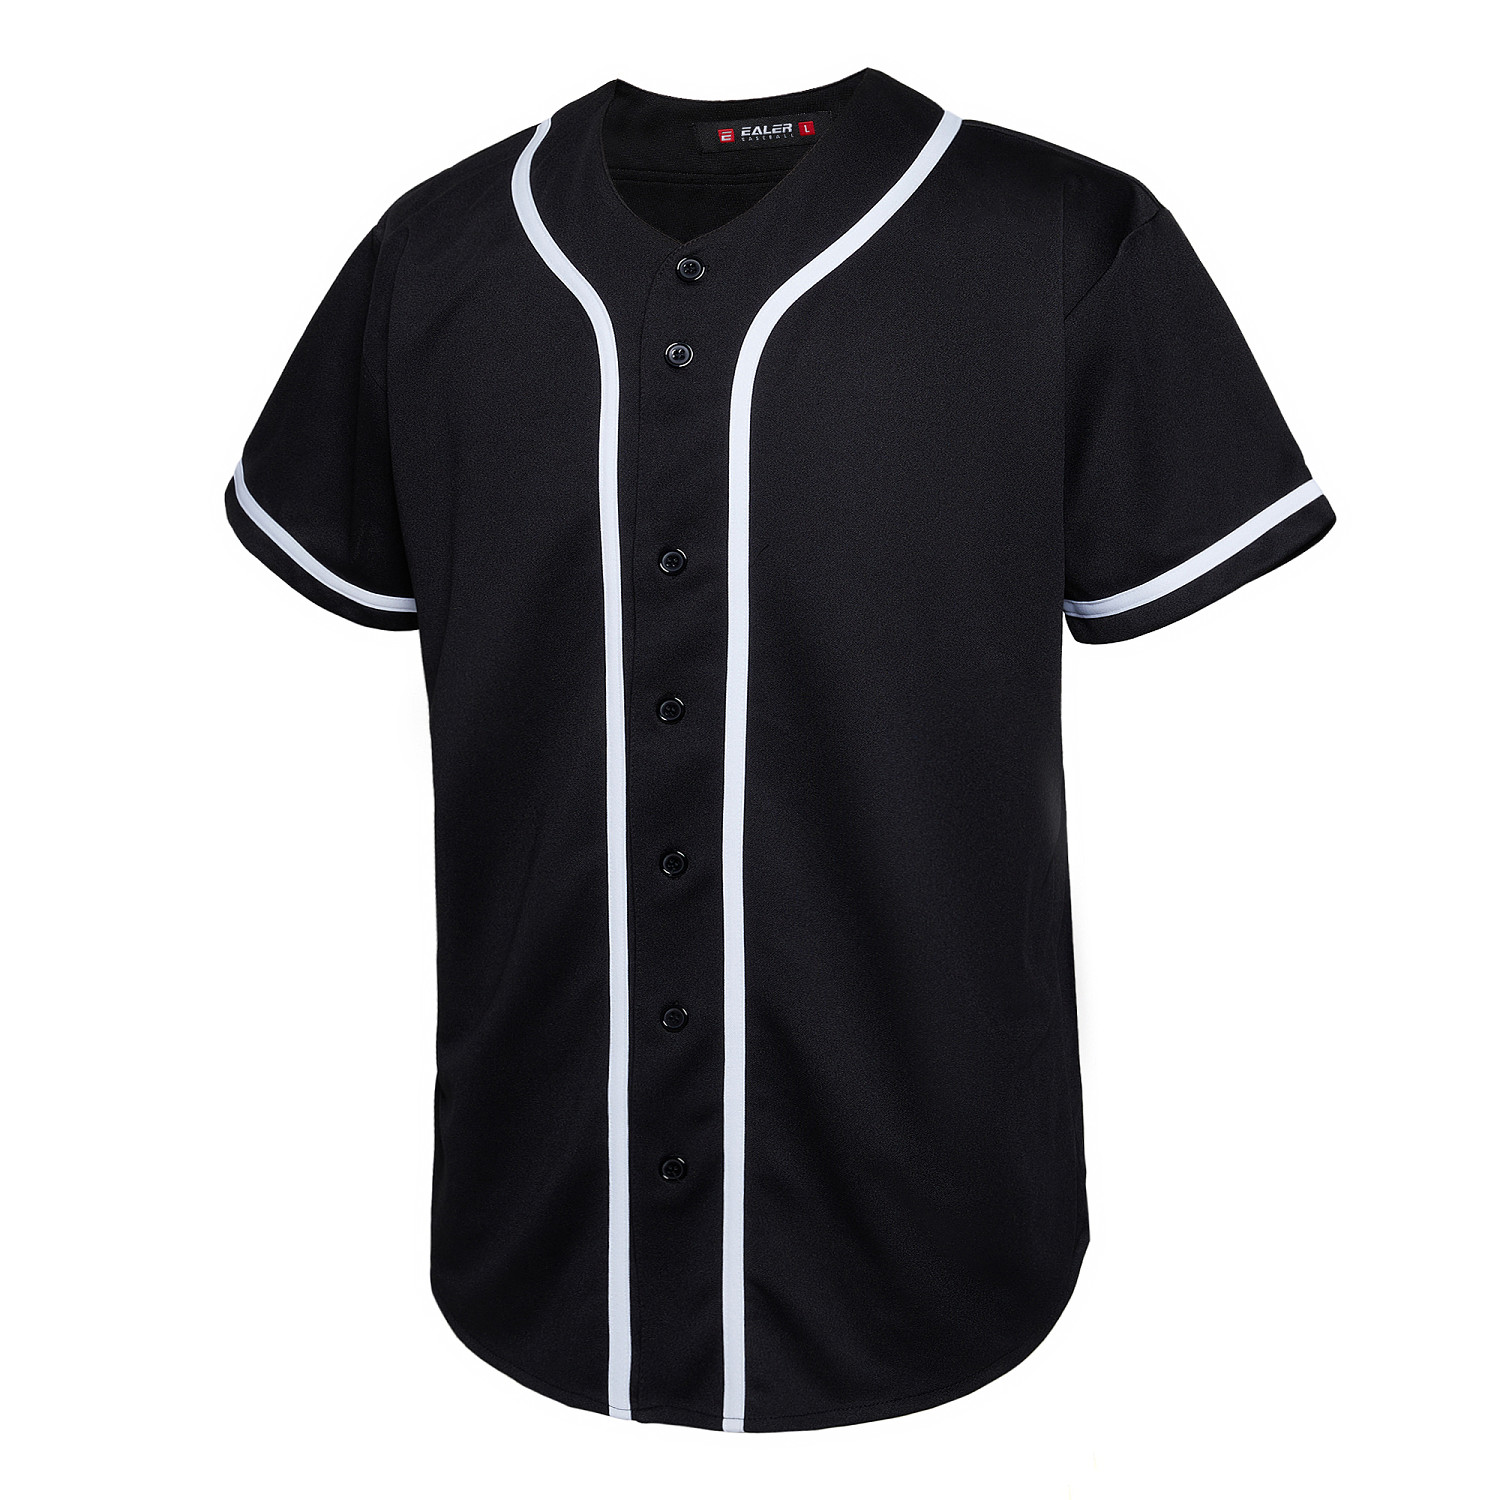 EALER BJ80 Series Mens Baseball Jersey Button Down Shirts Short Sleeve ...